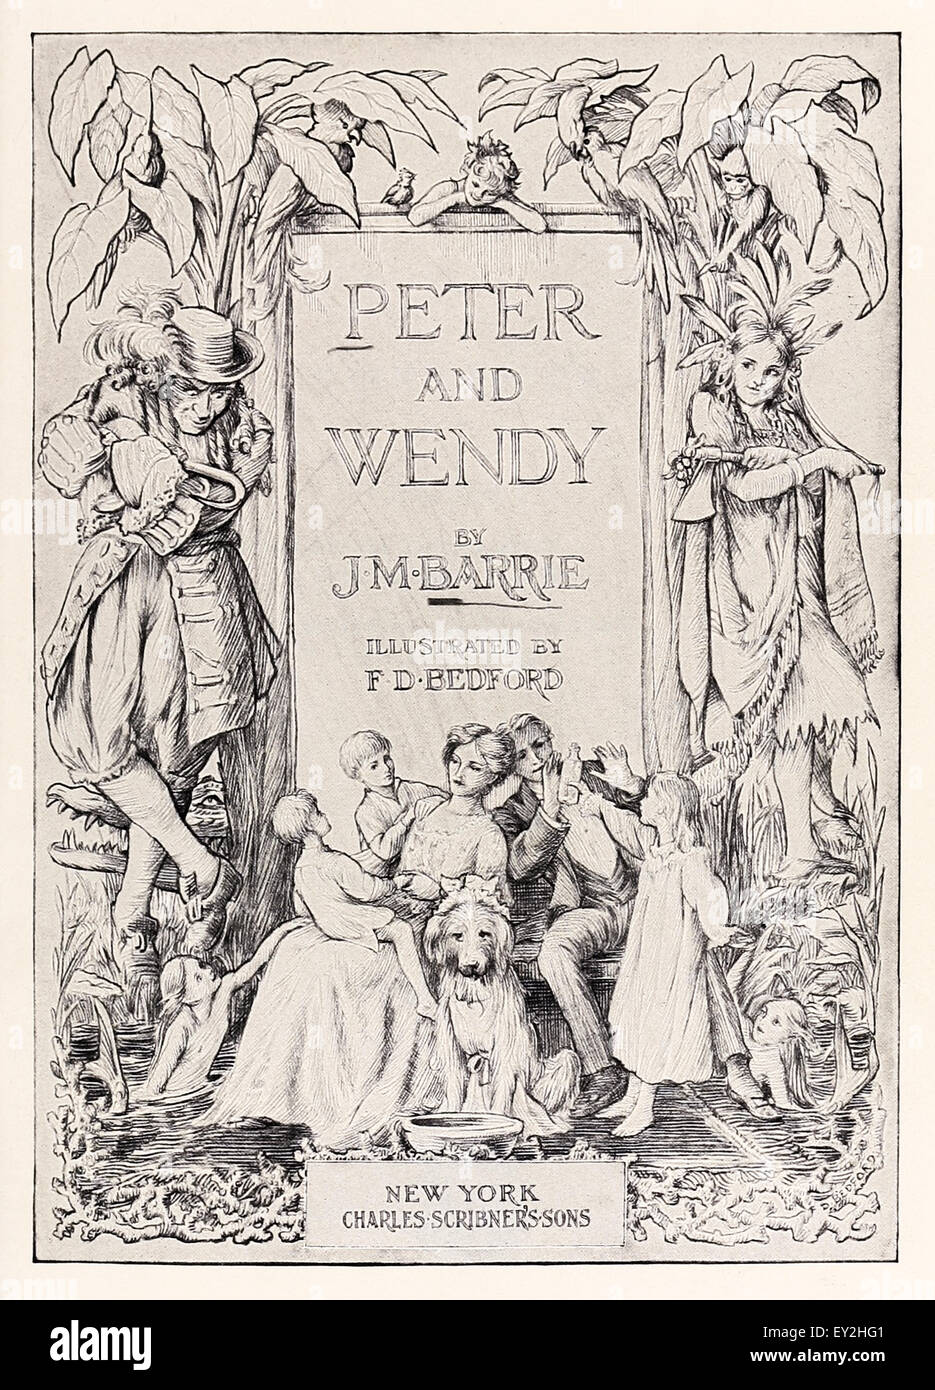 Frontispice de 'Peter & Wendy' par J.M. Barrie (1860-1937), illustration par F.D. Bedford (1864-1954). Voir la description pour plus d'informations. Banque D'Images